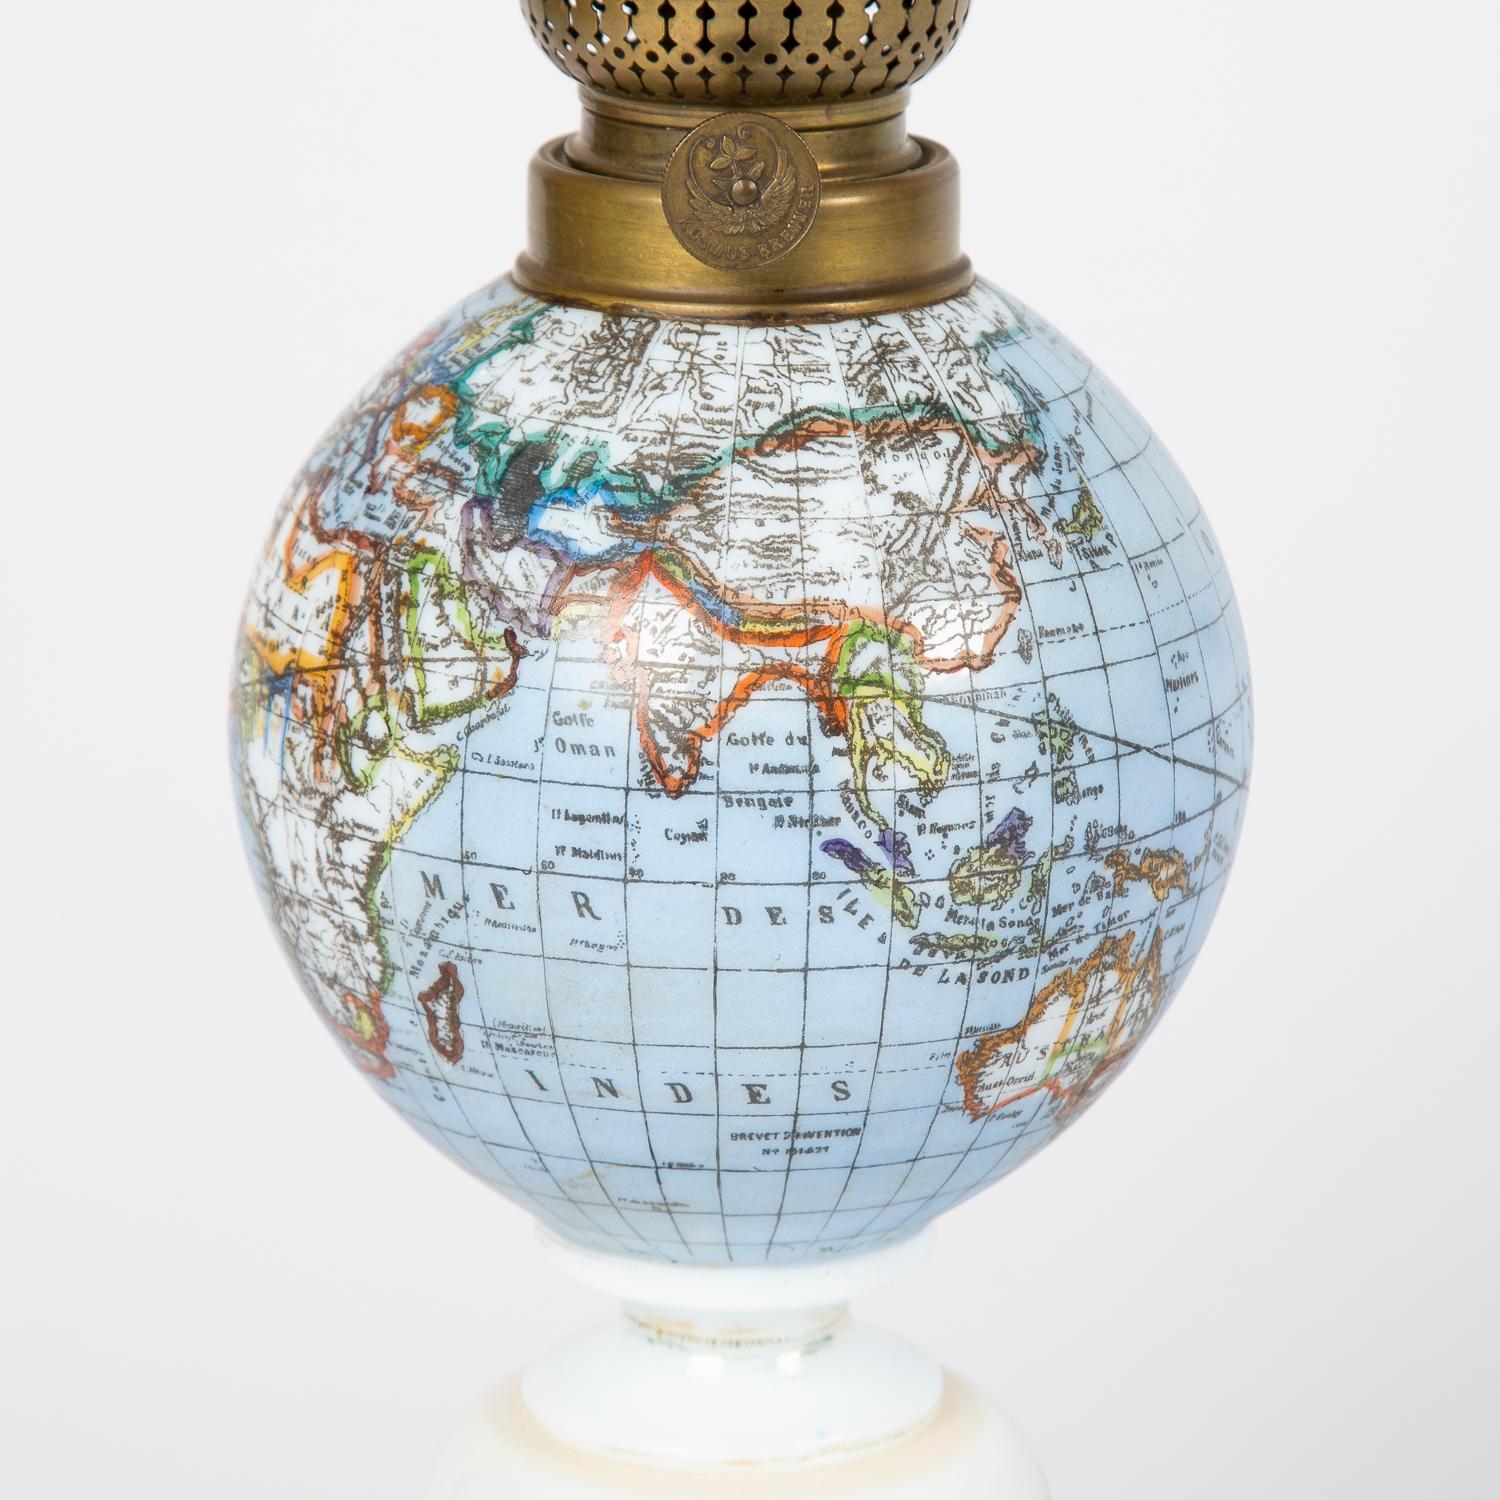 Une rare lampe à huile de la fin du 19e siècle avec un abat-jour en forme de globe et une base décorée d'un château dans une scène rurale, vers 1885.

Europe du Nord pour le marché français. Les pays et les mers indiqués sur le globe sont écrits